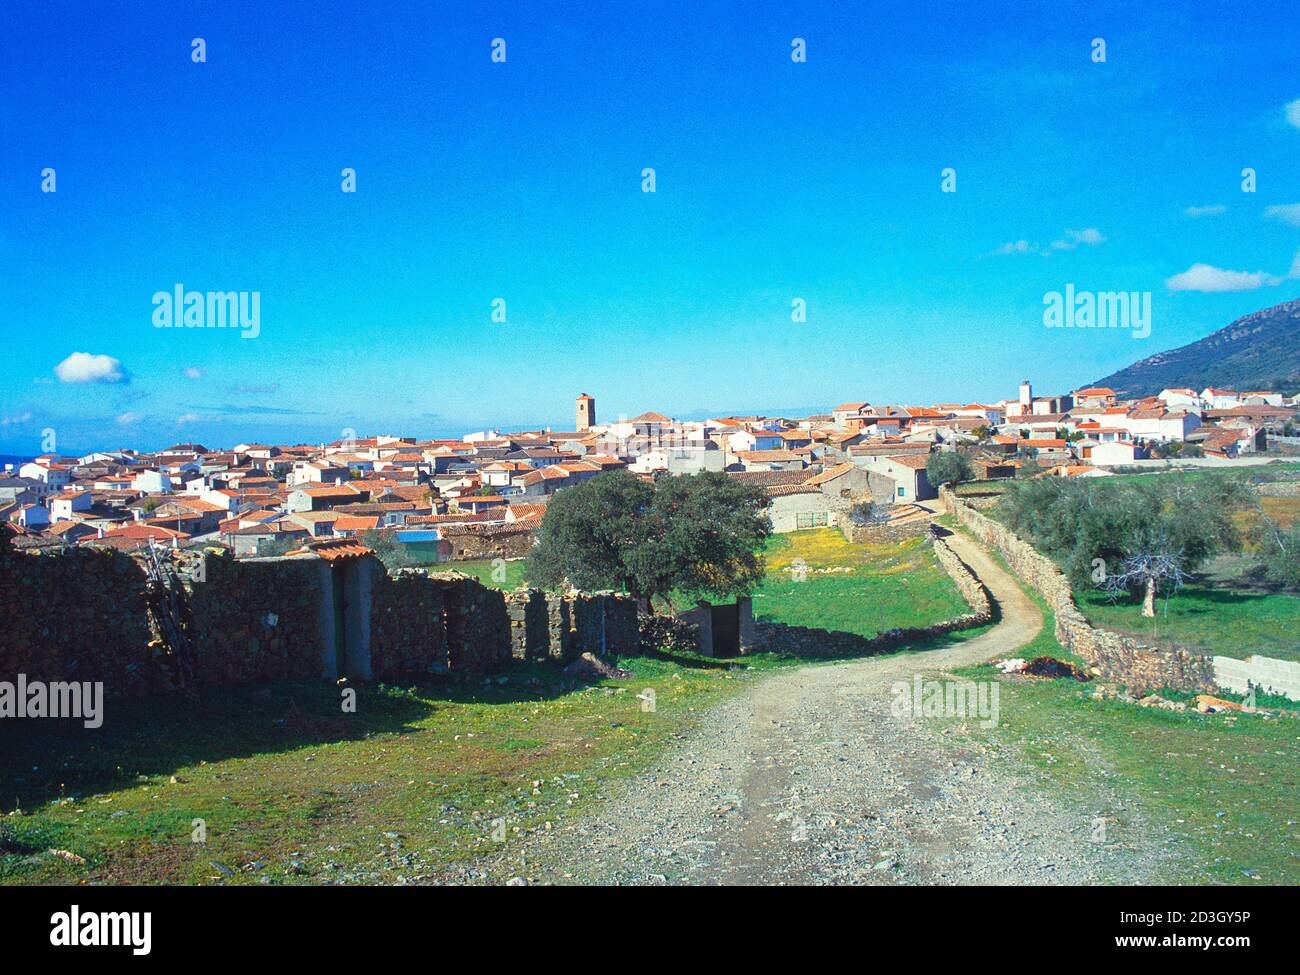 Overview. Sevilleja de la Jara, Toledo province, Castilla La Mancha, Spain. Stock Photo